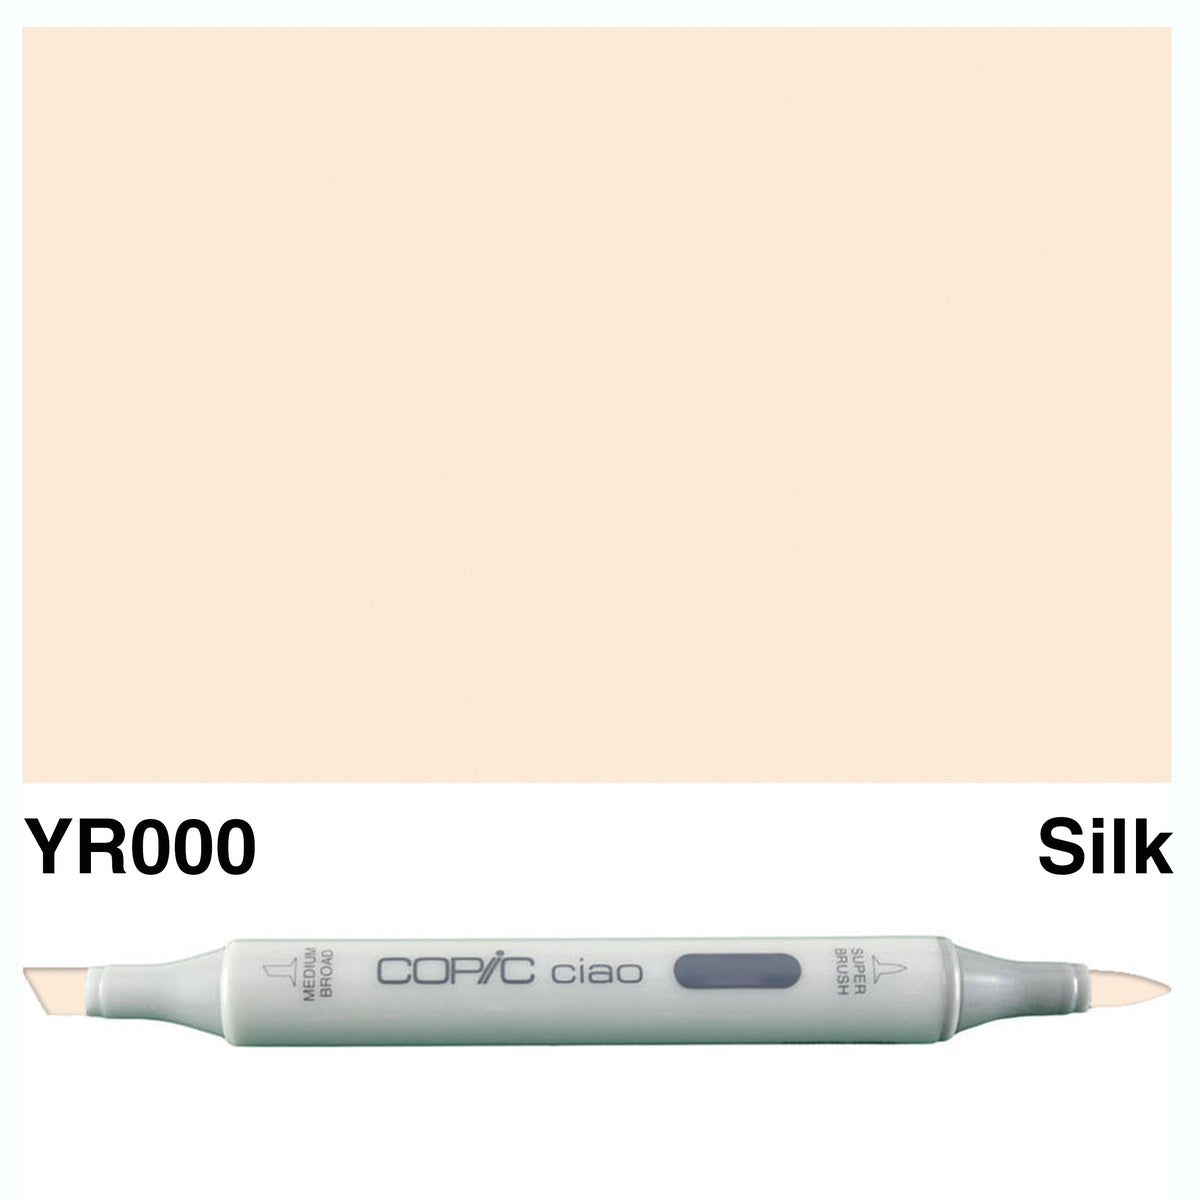 Copic Ciao YR000-Silk